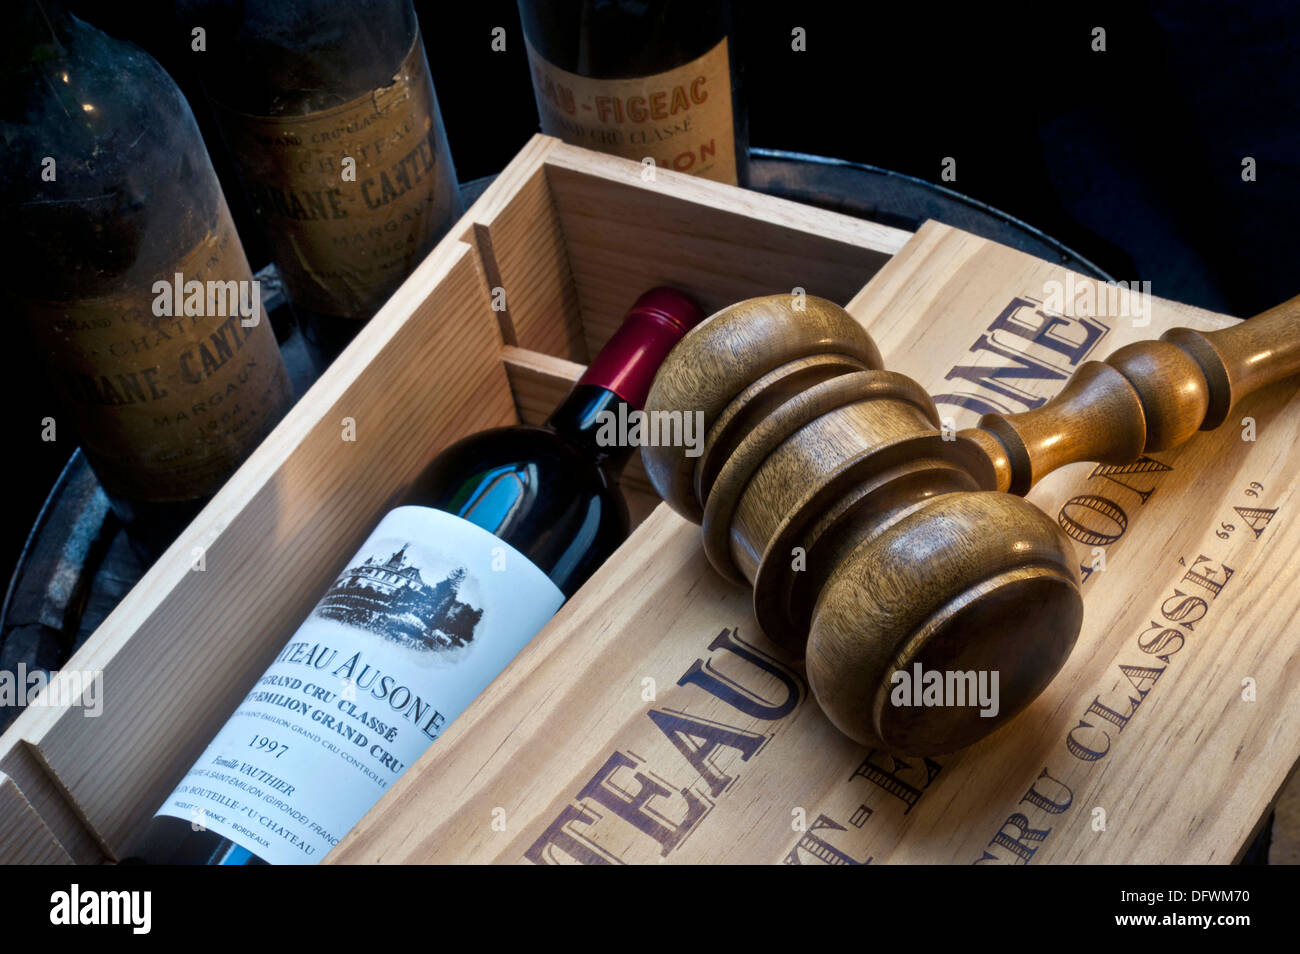 Weinversteigerungskeller mit Gavel auf offenem Kasten von Chateau Ausone Saint-Émilion Rotwein und andere alte feine rote Bordeaux Weinflaschen hinter Frankreich Stockfoto